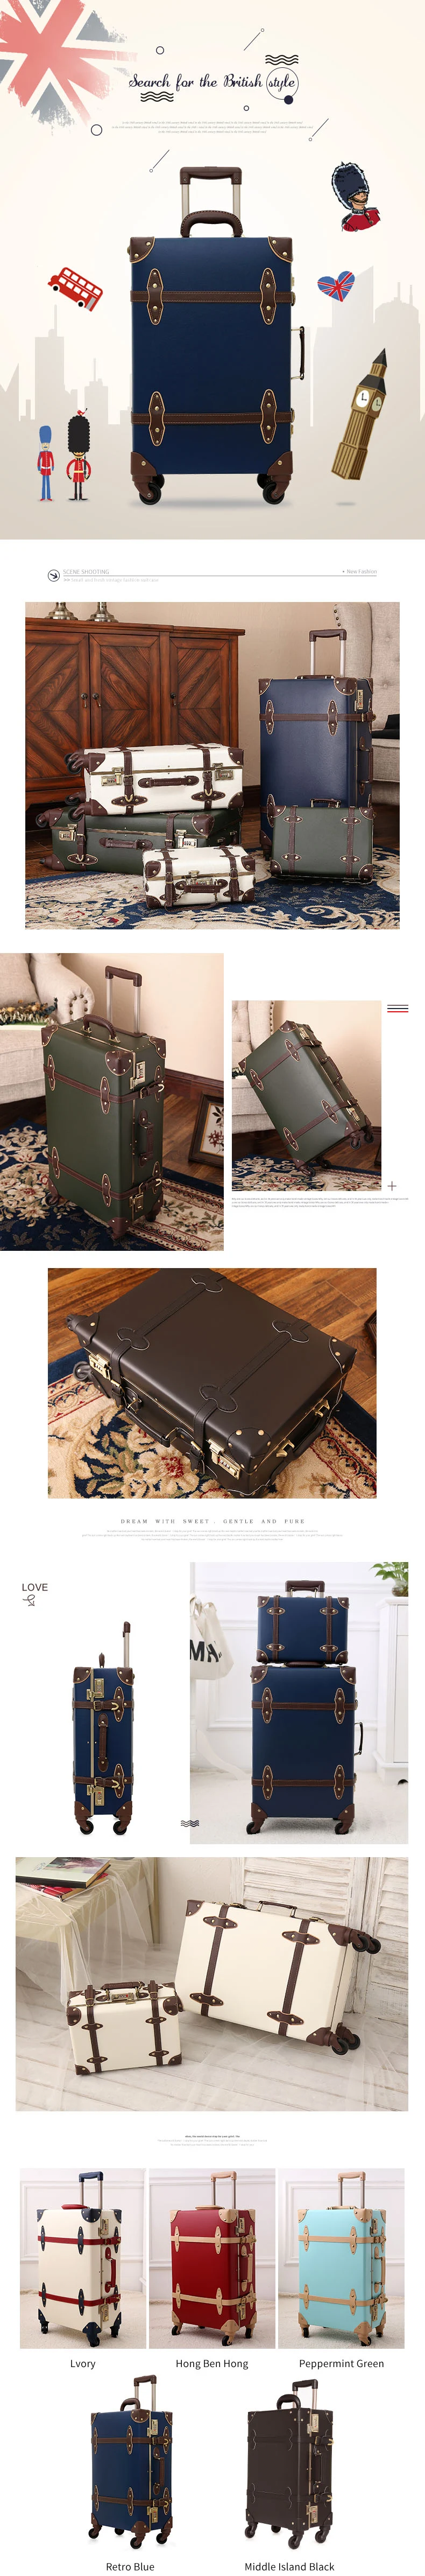 Винтажный чемодан для переноски багажа, Спиннер на колесиках в ретро стиле для путешествий